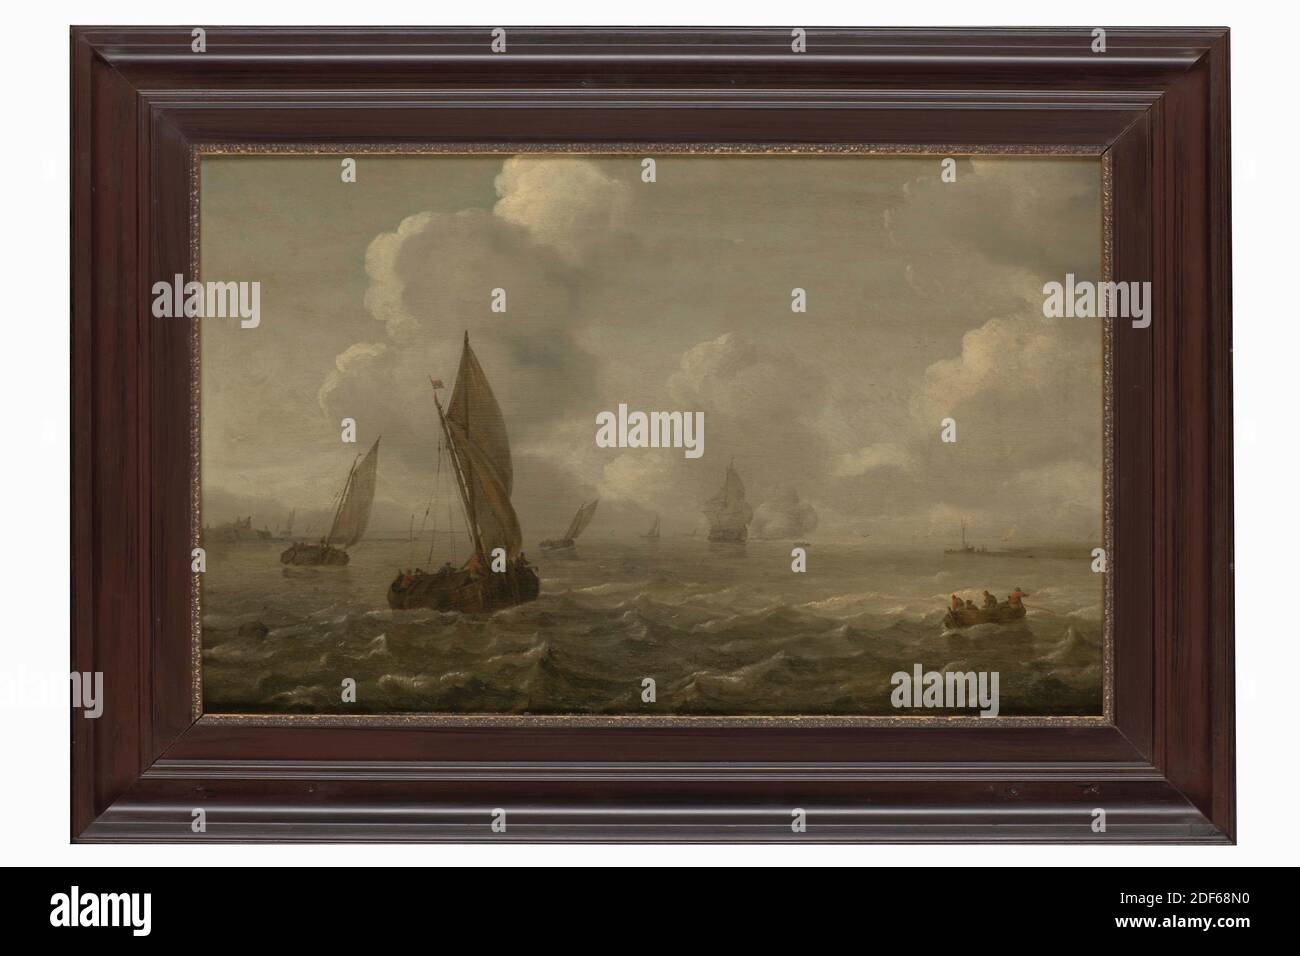 Peinture, Arnoldus van Anthonissen, 17ème siècle, façade Signature, sur un voilier: AA, panneau, peinture à l'huile, peint, support: 37.8 × 60.2 × 1cm (378 × 602 × 10mm), avec cadre: 53 , 2 × 75.2 × 4,6 cm (532 × 752 × 46mm), paysage marin, voilier, bateau, peinture représentant un paysage marin avec des navires. Au premier plan gauche se trouve un grand voilier avec deux mâts et un drapeau en haut. Sur l'extrême droite un bateau avec plusieurs personnes. D'autres navires naviguent plus loin en arrière. A l'extrême gauche et à l'extrême droite, on peut voir une partie de la banque. Signé sur le voilier. La peinture est dans un cadre en bois avec un bord intérieur doré Banque D'Images